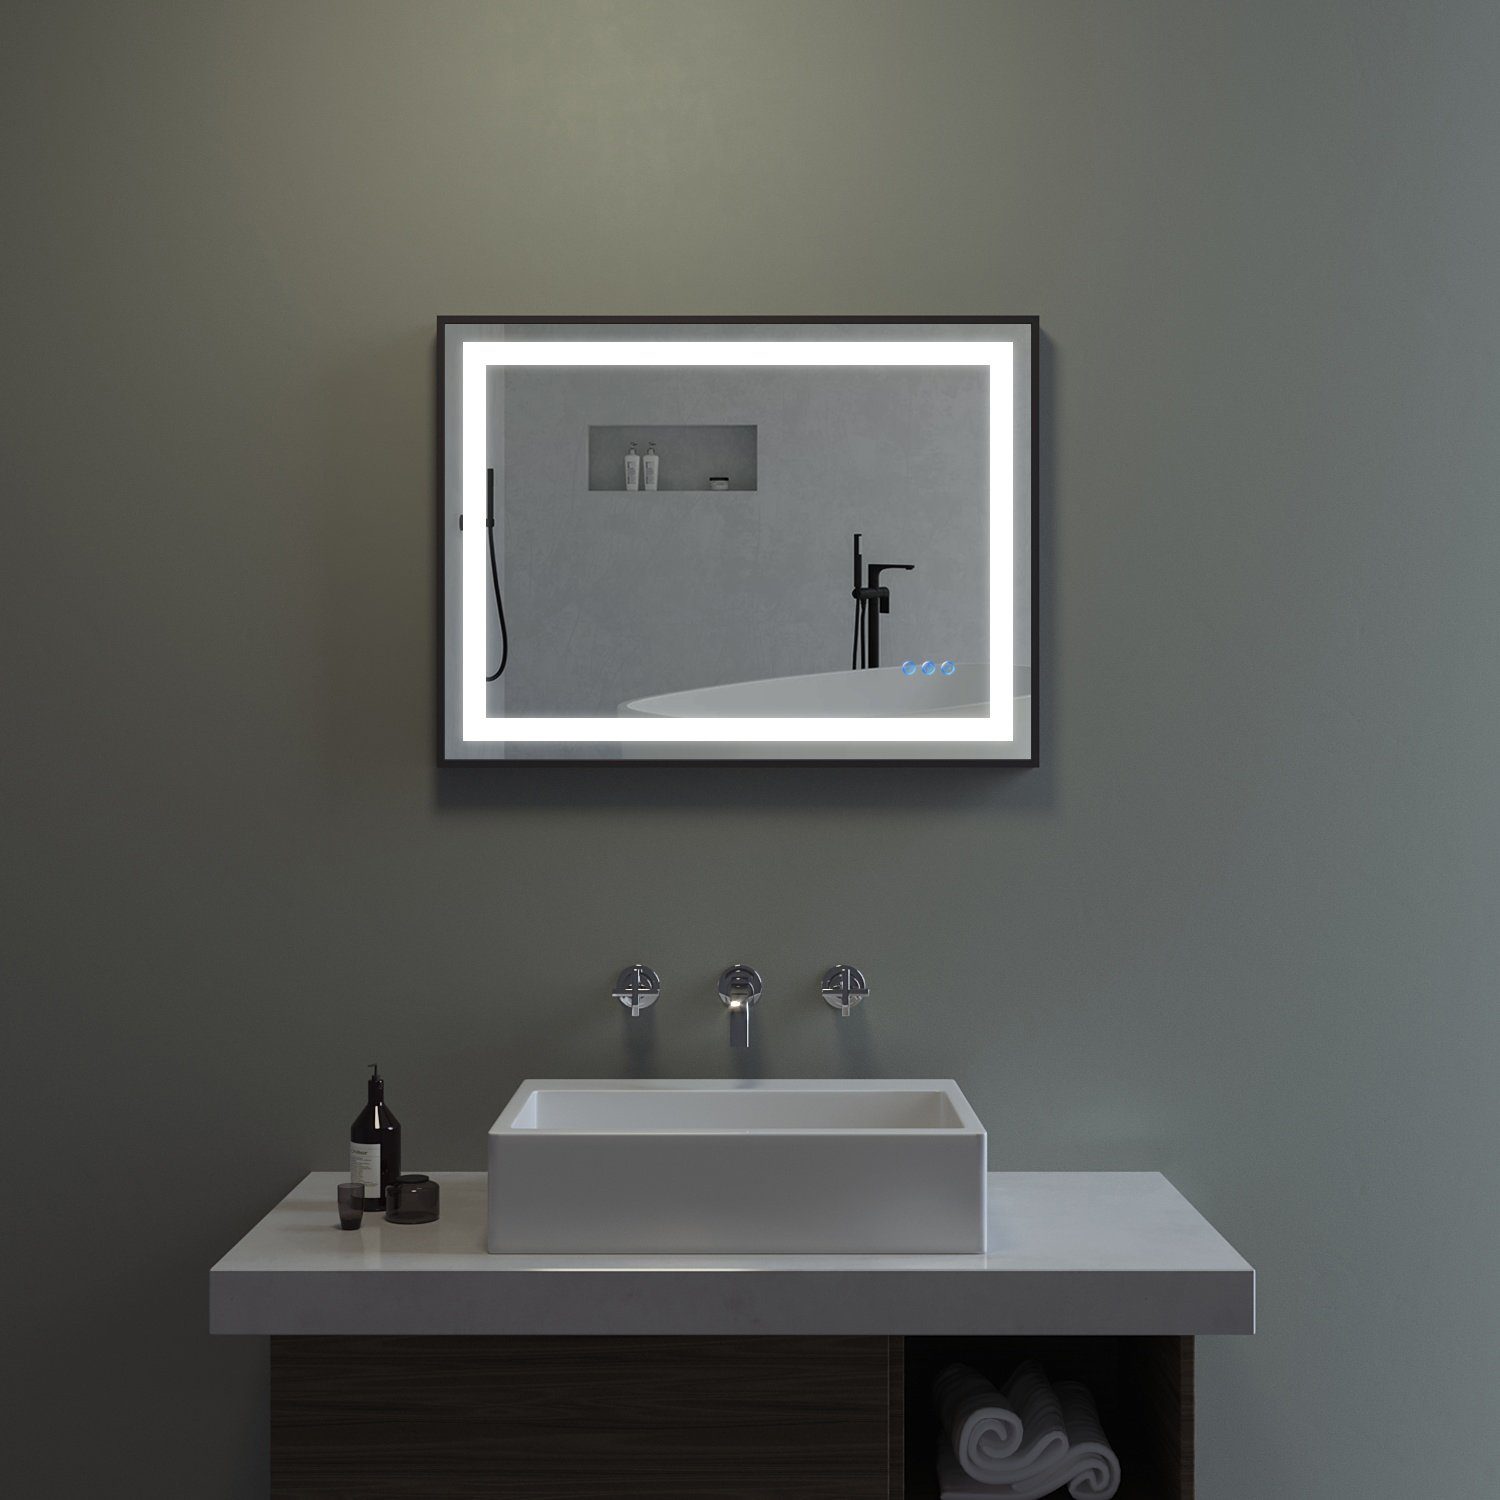 AQUABATOS LED-Lichtspiegel Badspiegel mit Badezimmerspiegel Energiesparend 100x70cm), Antibeschlag Schalter Touch LED Beleuchtung mit Licht (80x60cm Warmweiß Kaltweiß Dimmbar